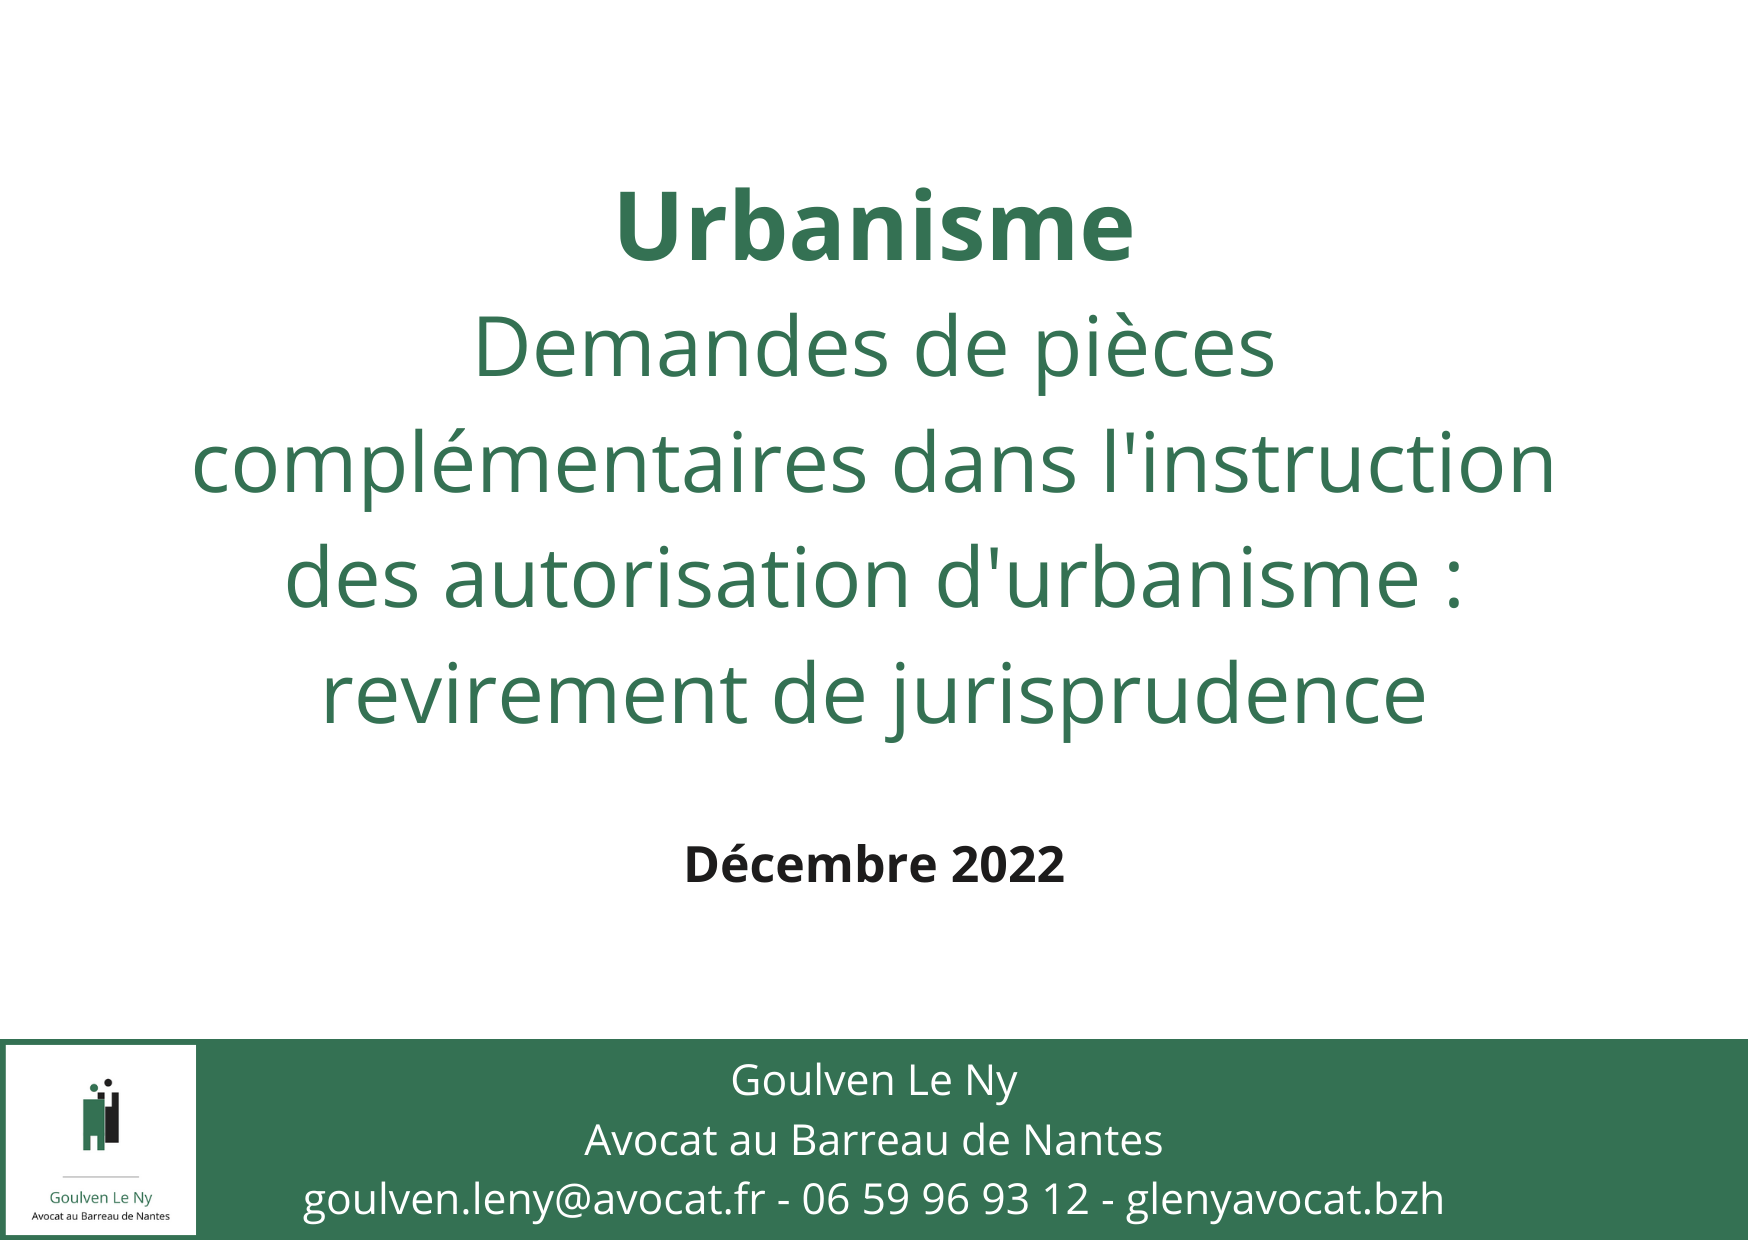 Demandes de pièces complémentaires dans l'instruction des autorisation d'urbanisme : revirement de jurisprudence